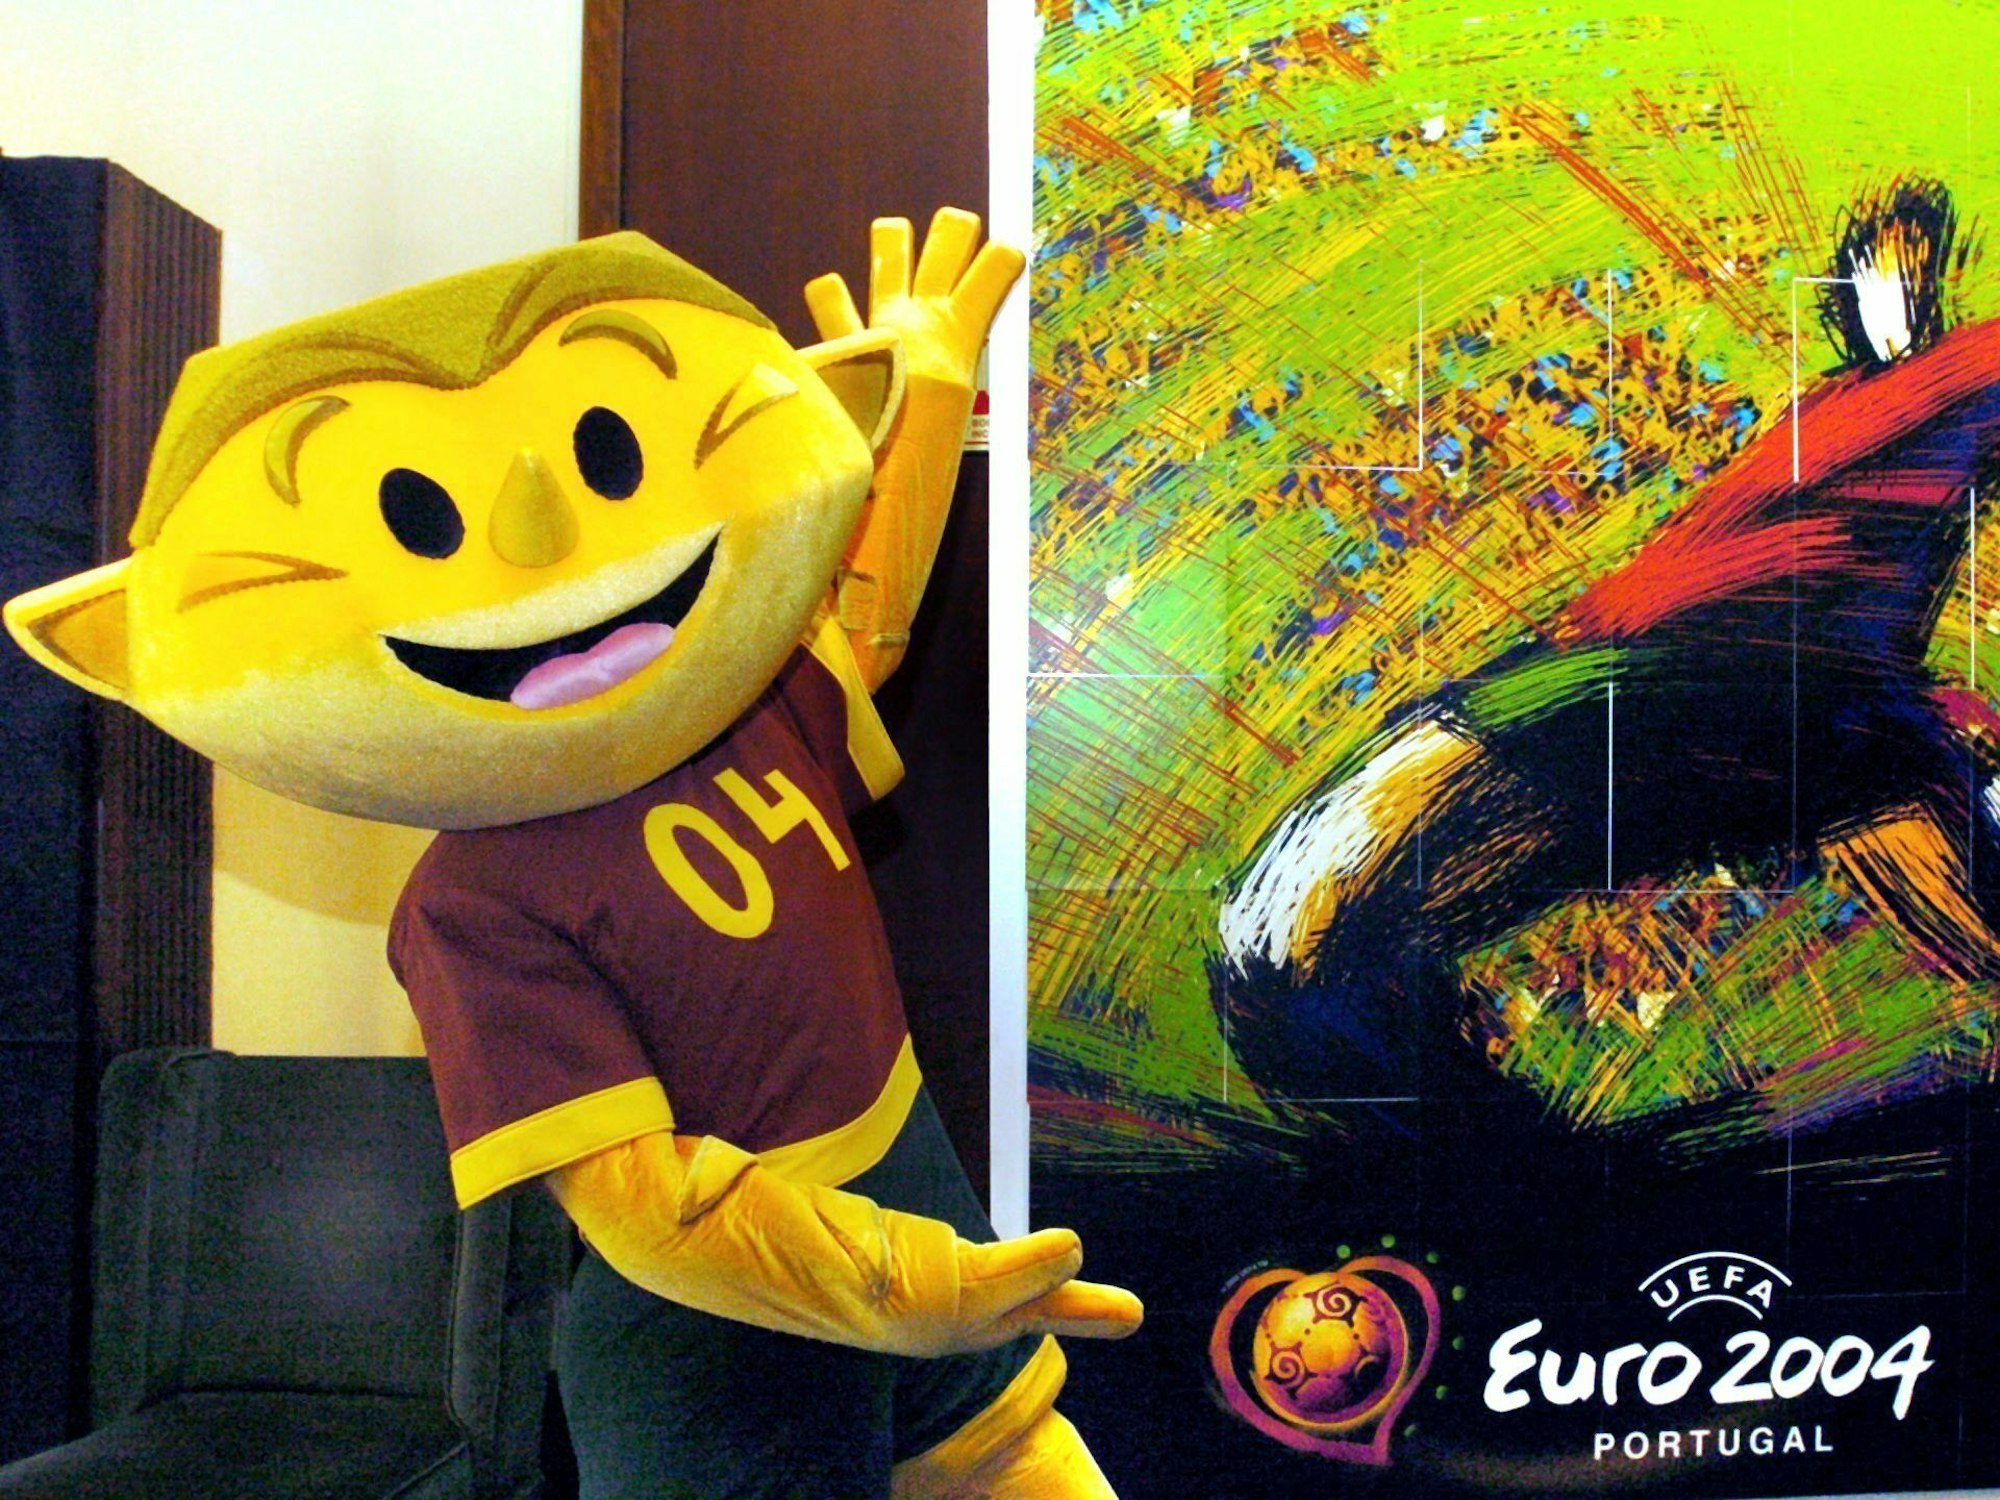 Das Maskottchen „Kinas“ für die EM 2004 wird in Portugal vorgestellt.